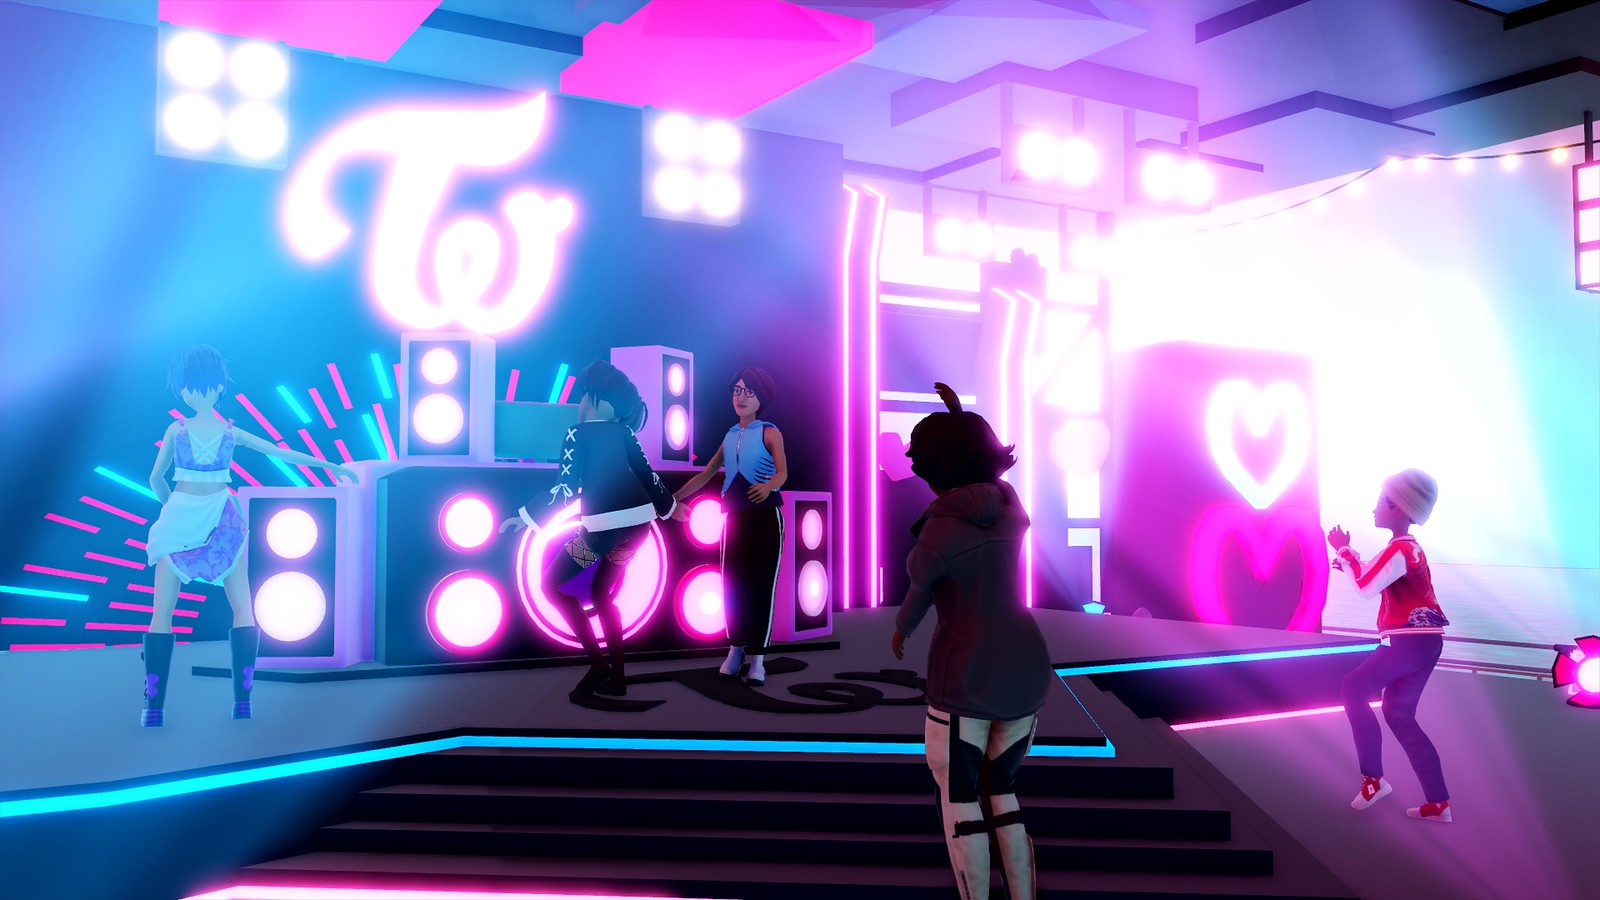 Molti personaggi ballano in gruppo o da soli in un locale notturno illuminato dai neon.